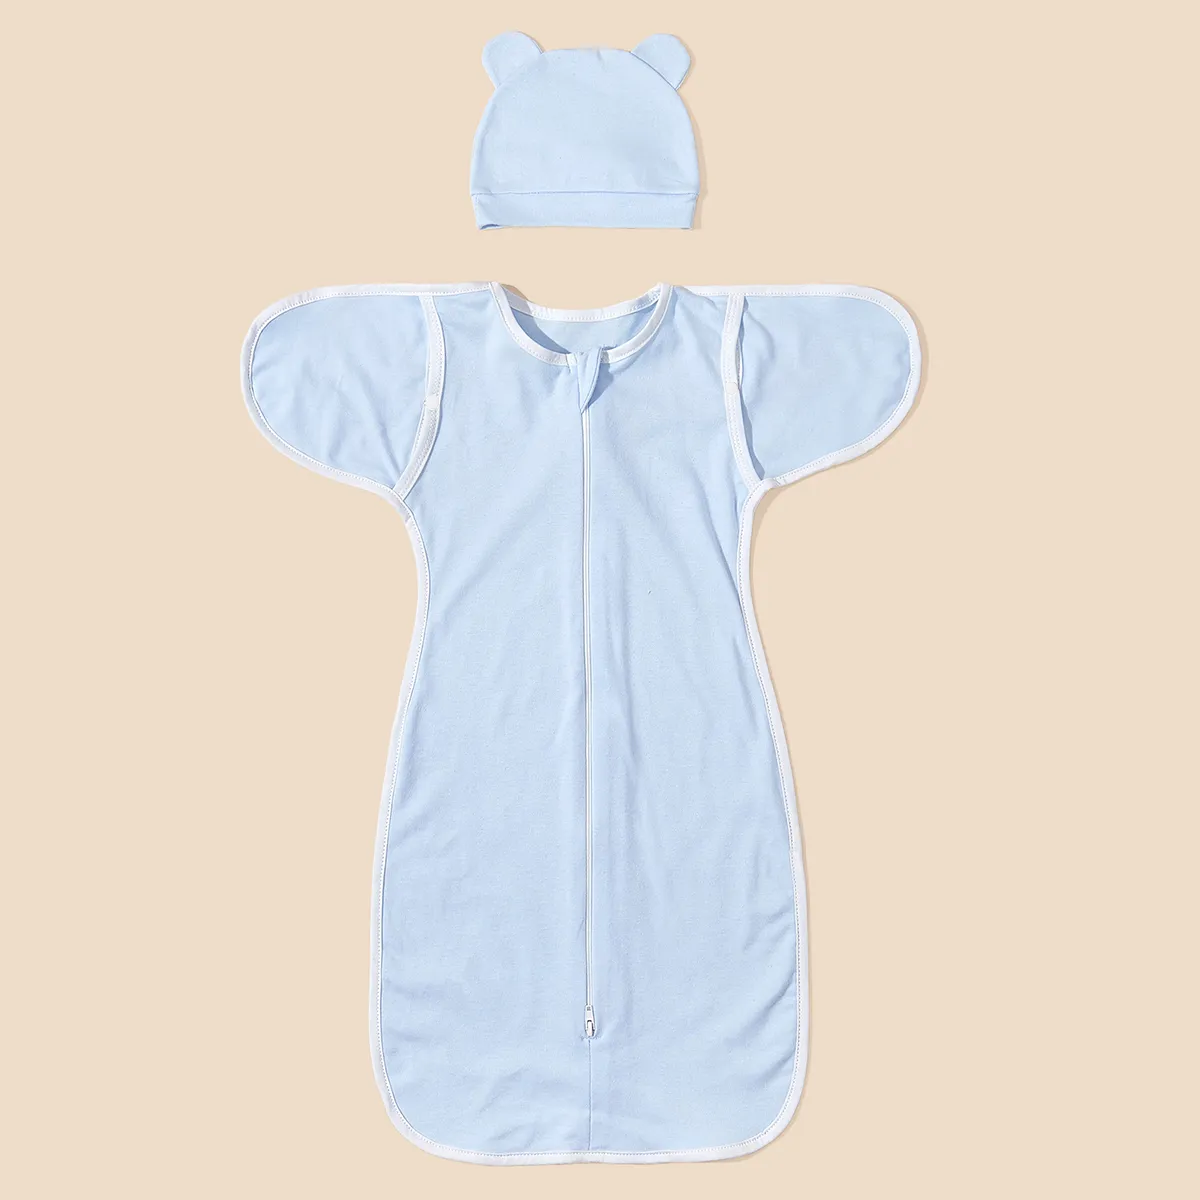 100% Coton D’épaisseur Moyenne Unisexe Anti-Kick Design Avec Boutons Solid Color Baby Sleeping Bag Pour La Literie Pour Enfants